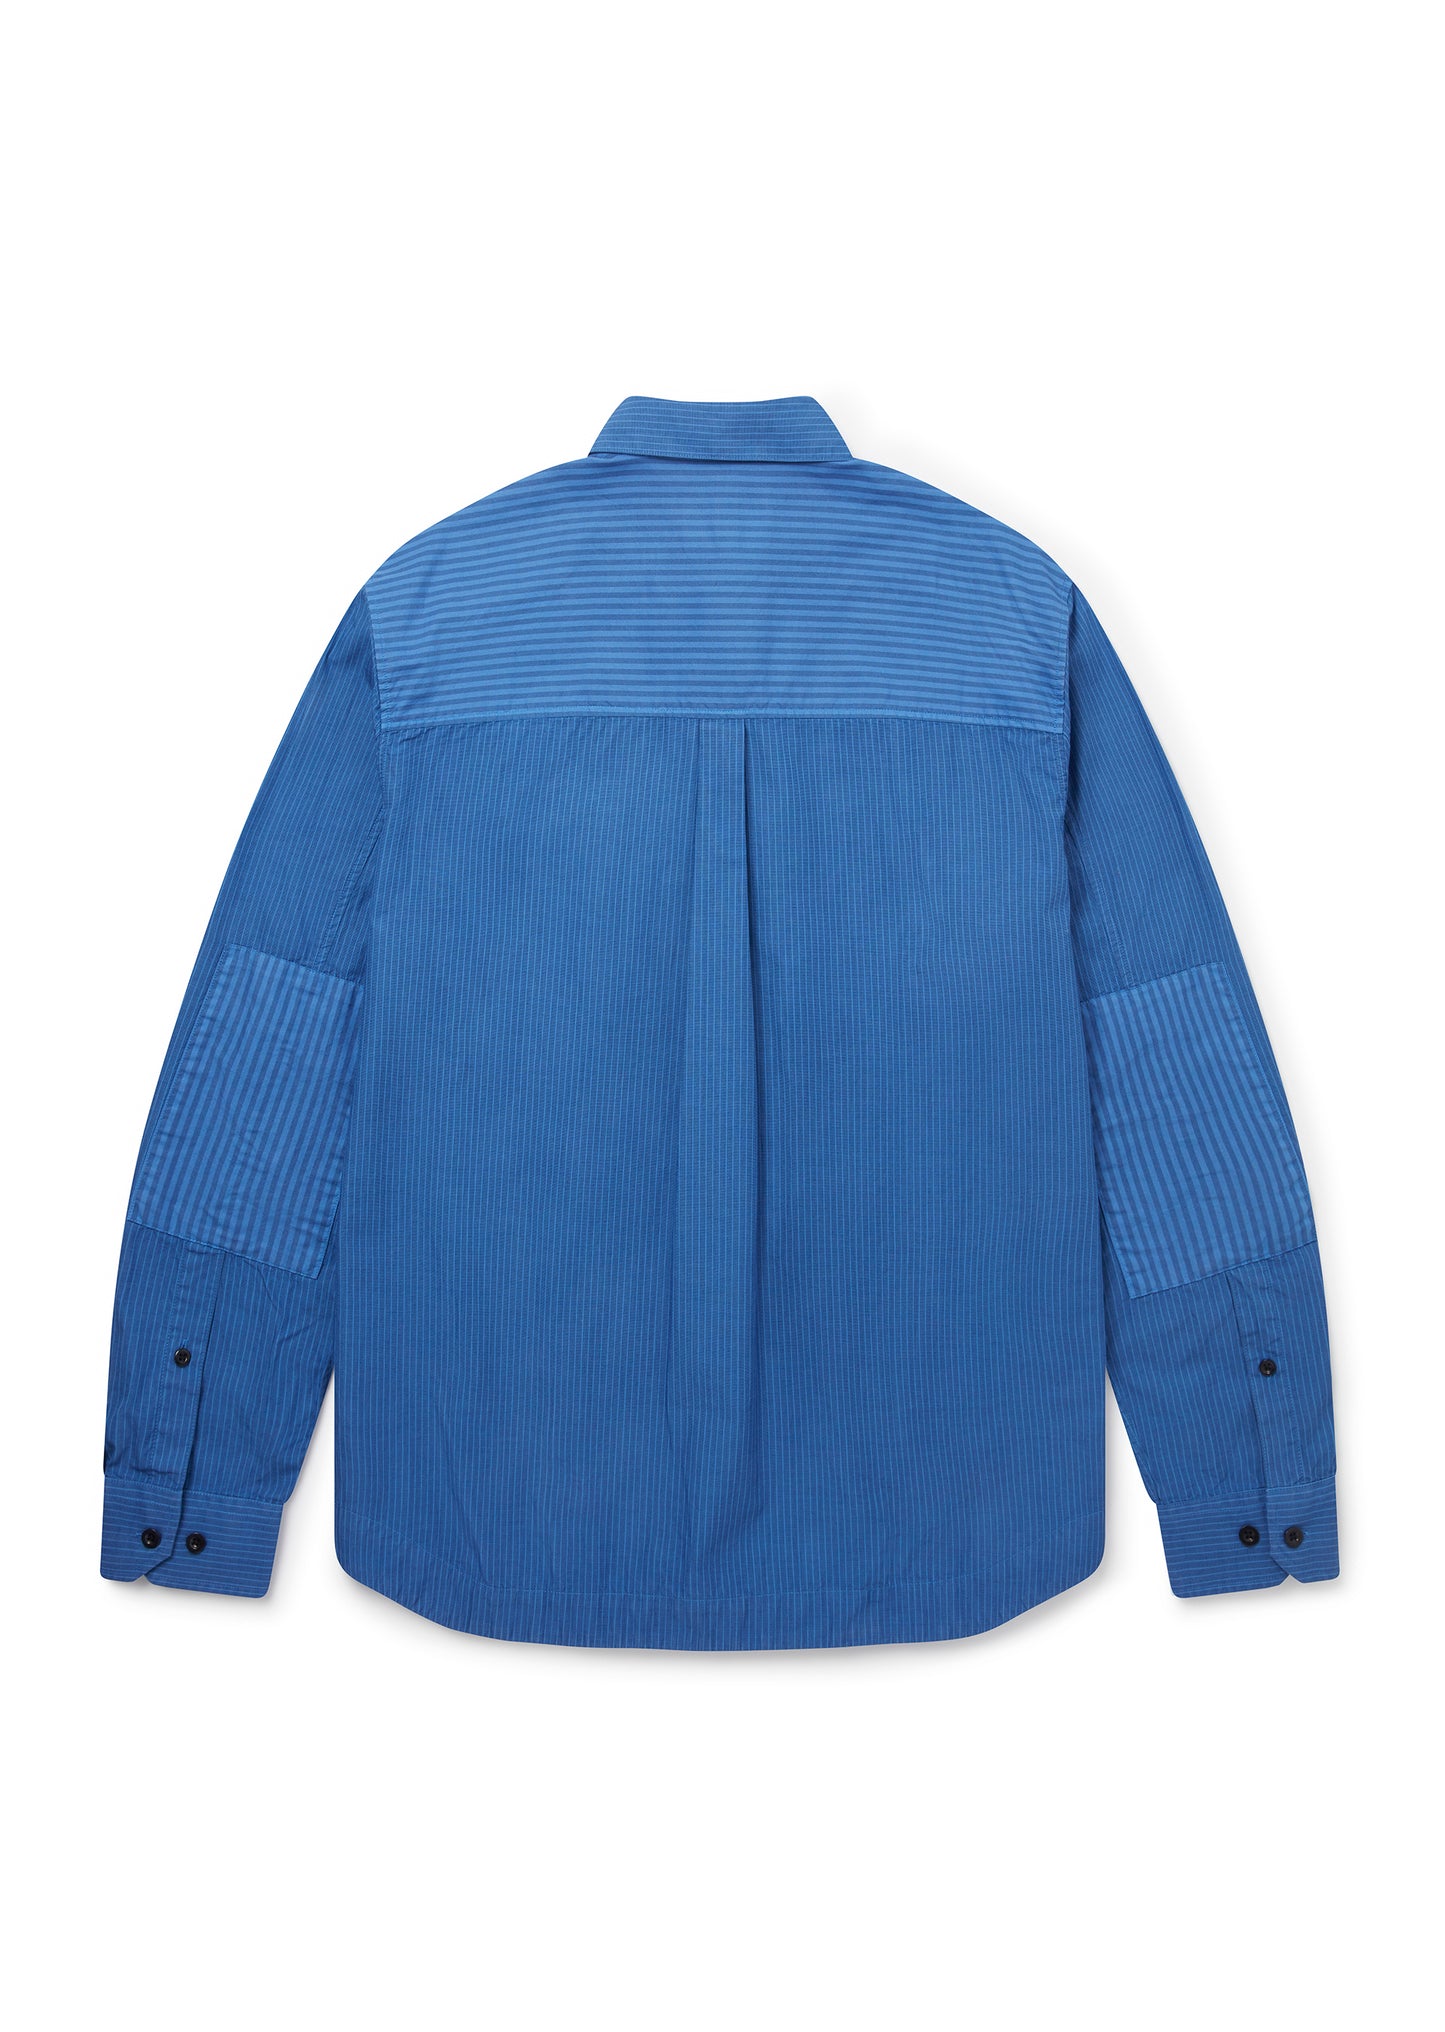 Stripe Cut & Sew Shirt in Blue